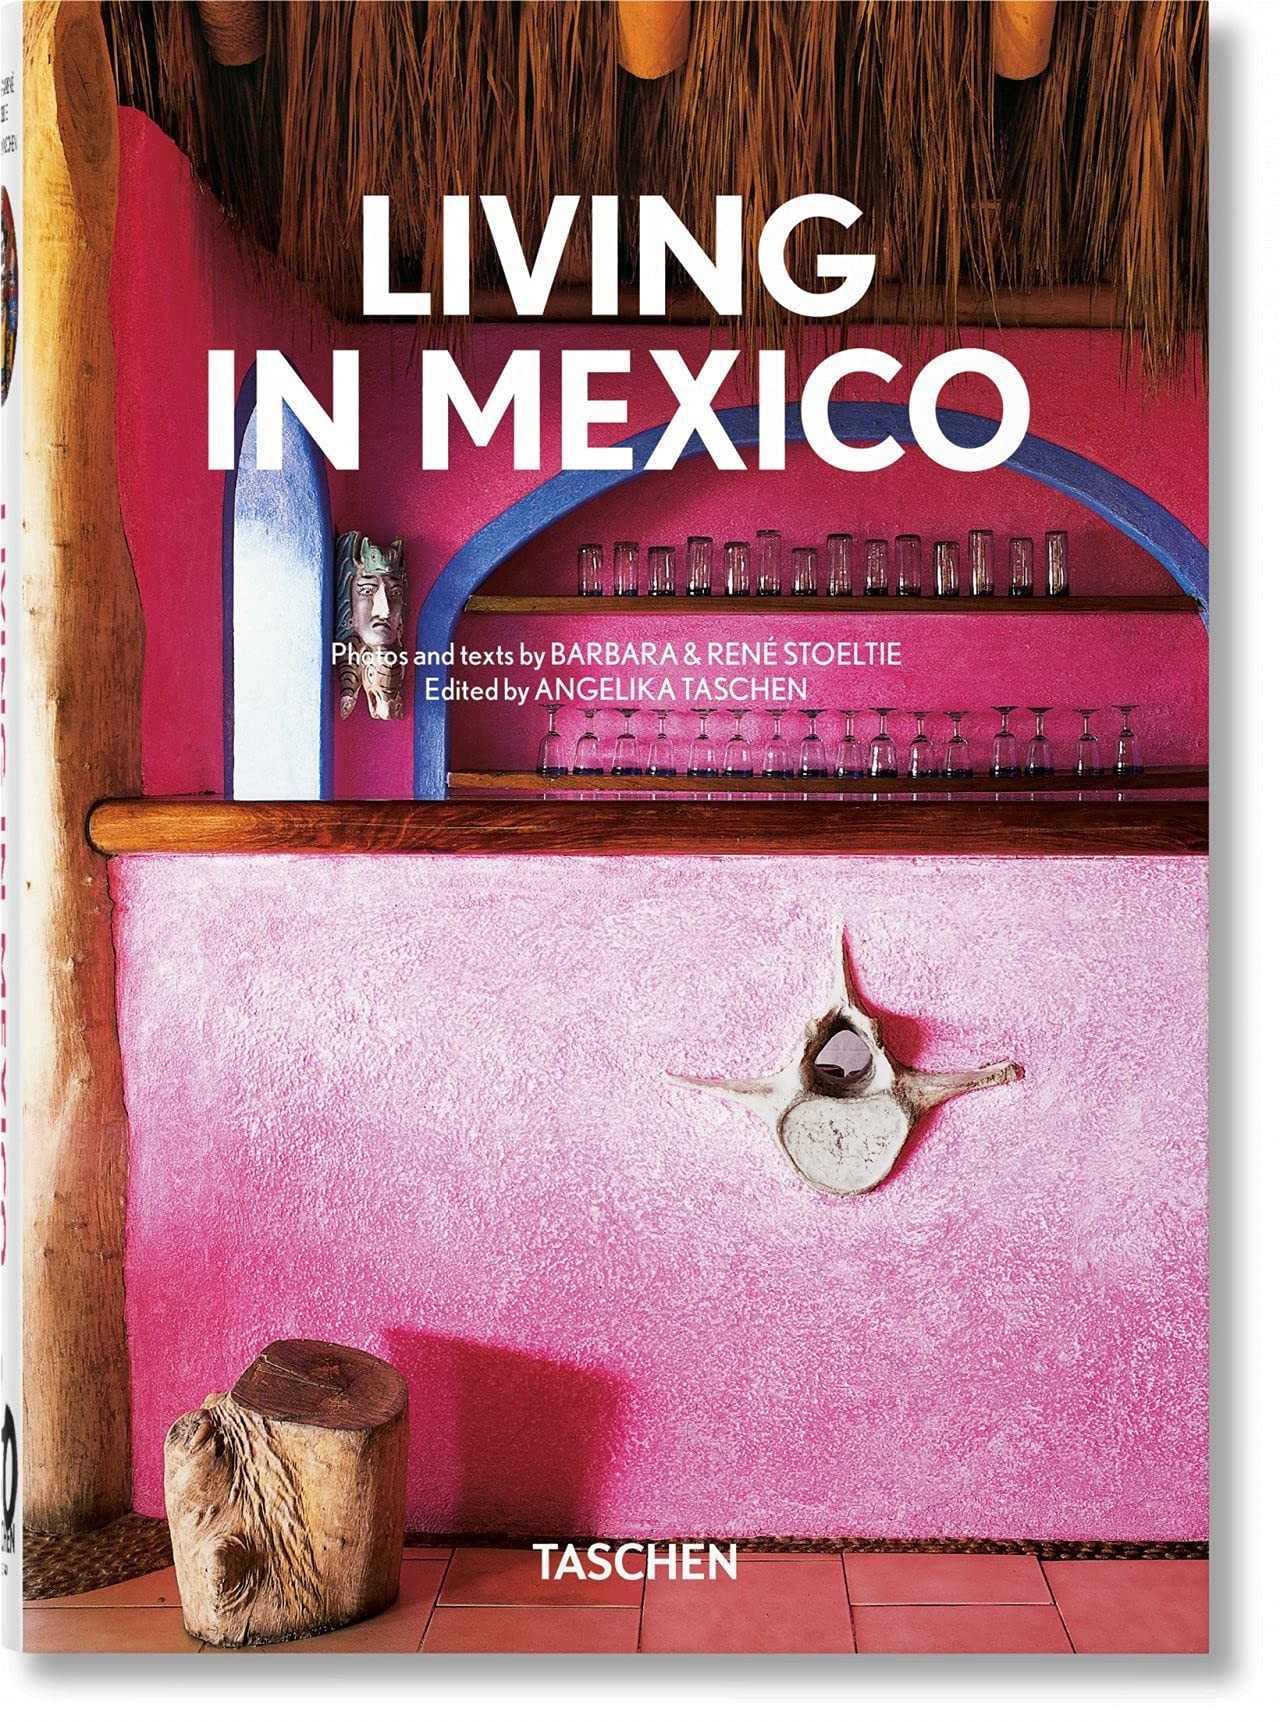 Барбара Стойлти, Рене Стойлти: Жизнь в Мексике. Издание к 40-летнему юбилею